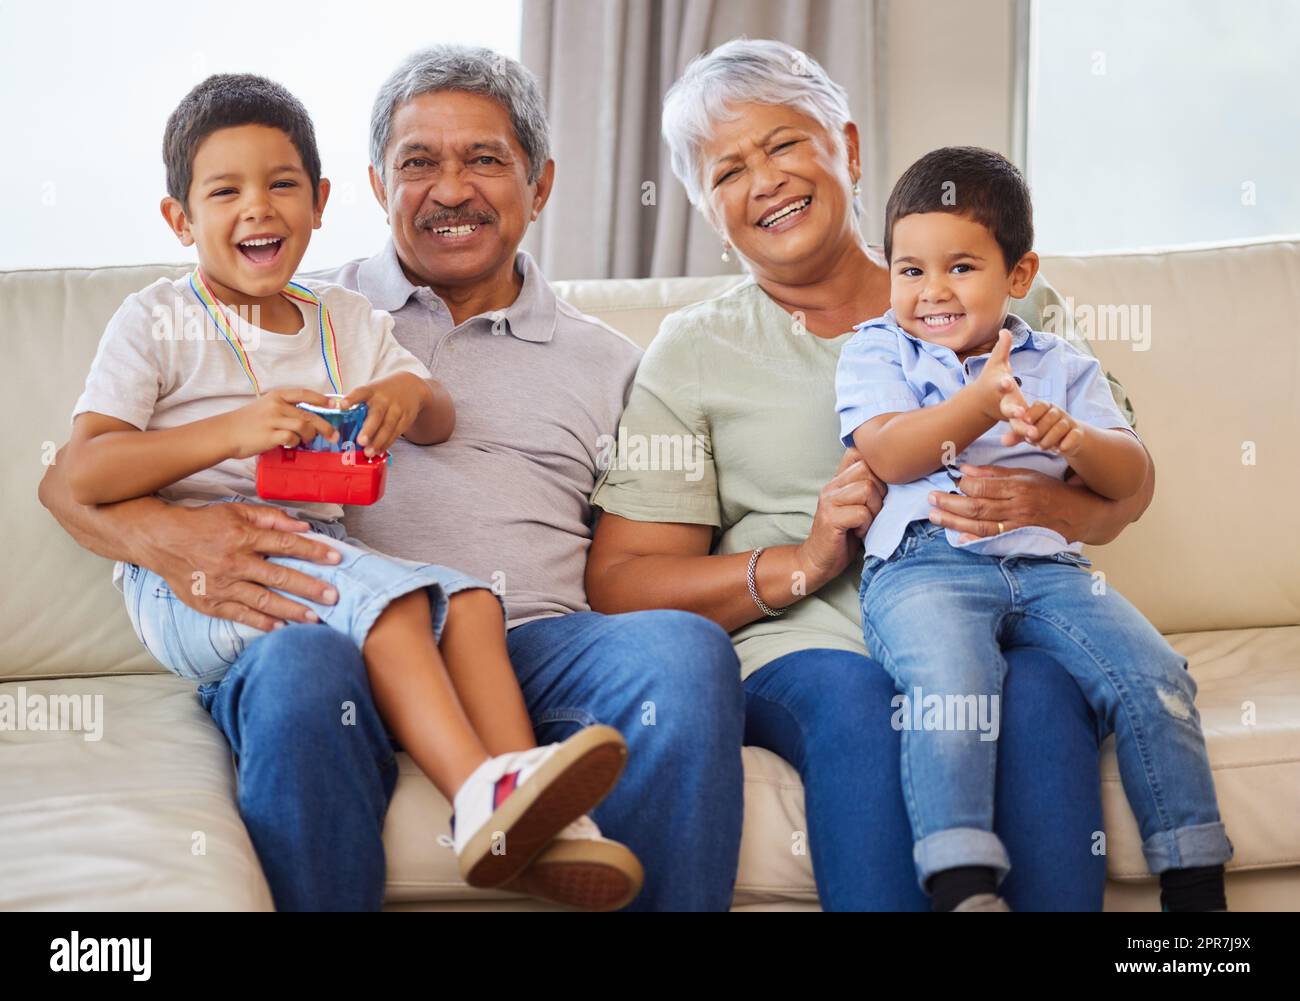 Portrait de grands-parents souriants tout en tenant leurs petits-fils sur un canapé dans le salon. Homme et femme hispaniques senior passant du temps avec leurs petits-enfants dans le salon à la maison Banque D'Images